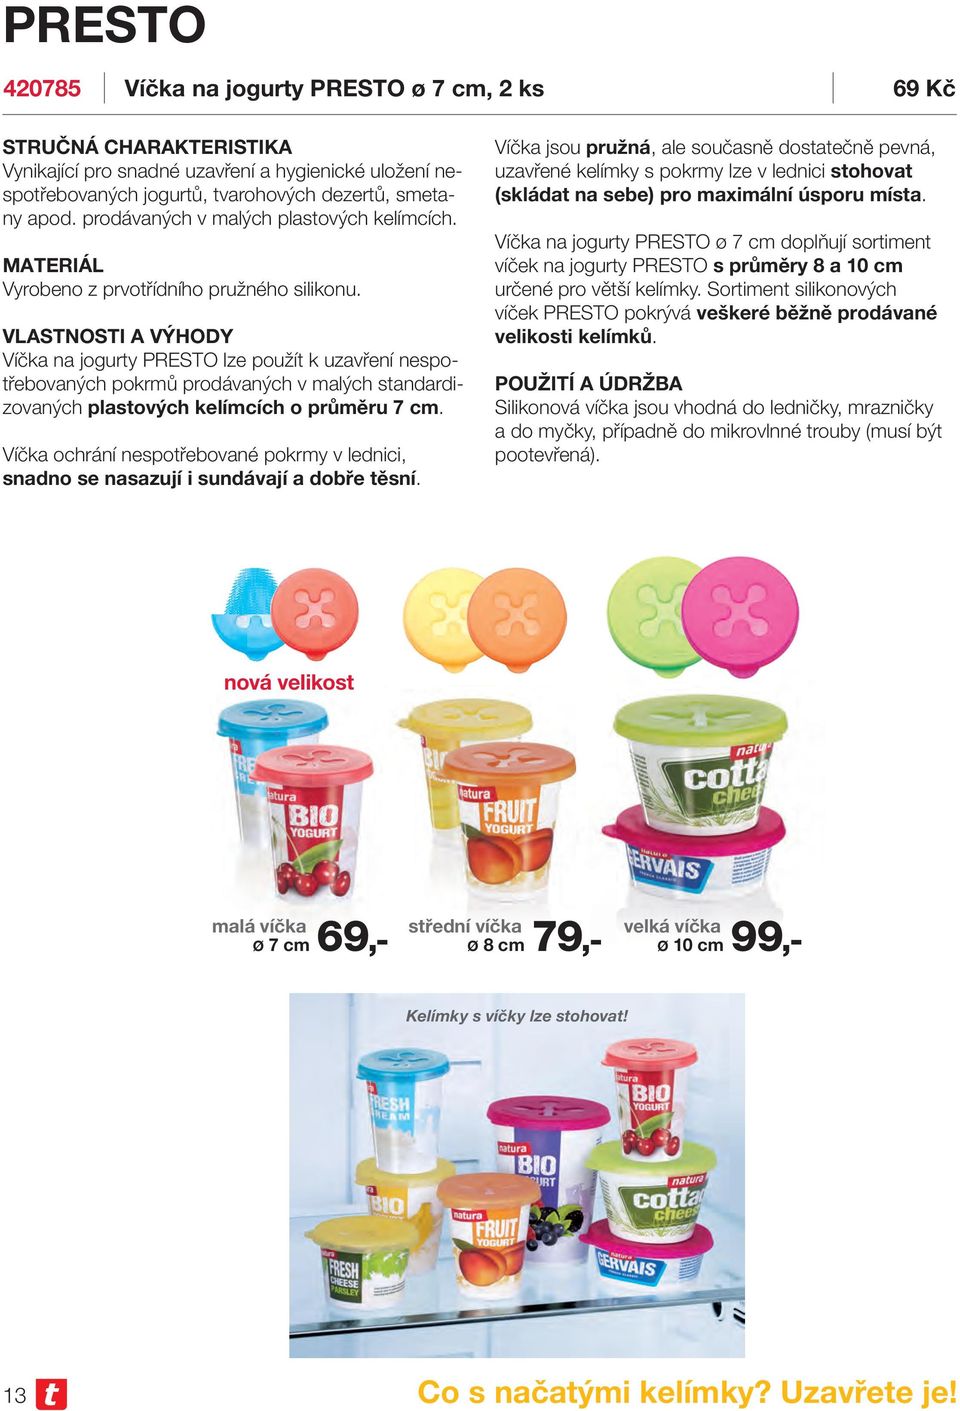 Víčka na jogurty PRESTO lze použít k uzavření nespotřebovaných pokrmů prodávaných v malých standardizovaných plastových kelímcích o průměru 7 cm.